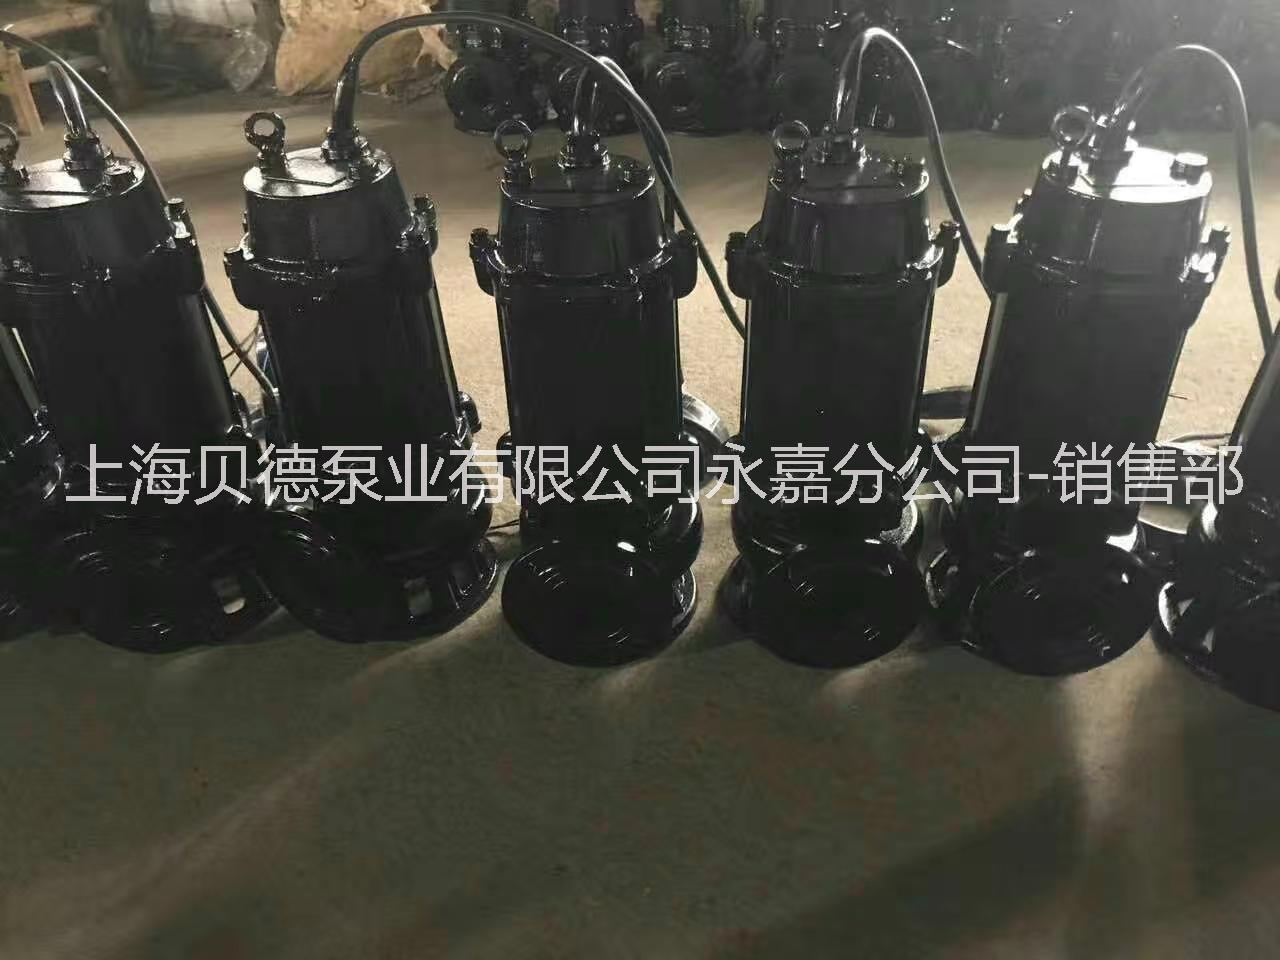 上海贝德泵业有限公司潜水排污泵批发65JYWQ37-13 3KW 证件齐全，价格优惠 ,批发JYWQ潜水排污泵图片